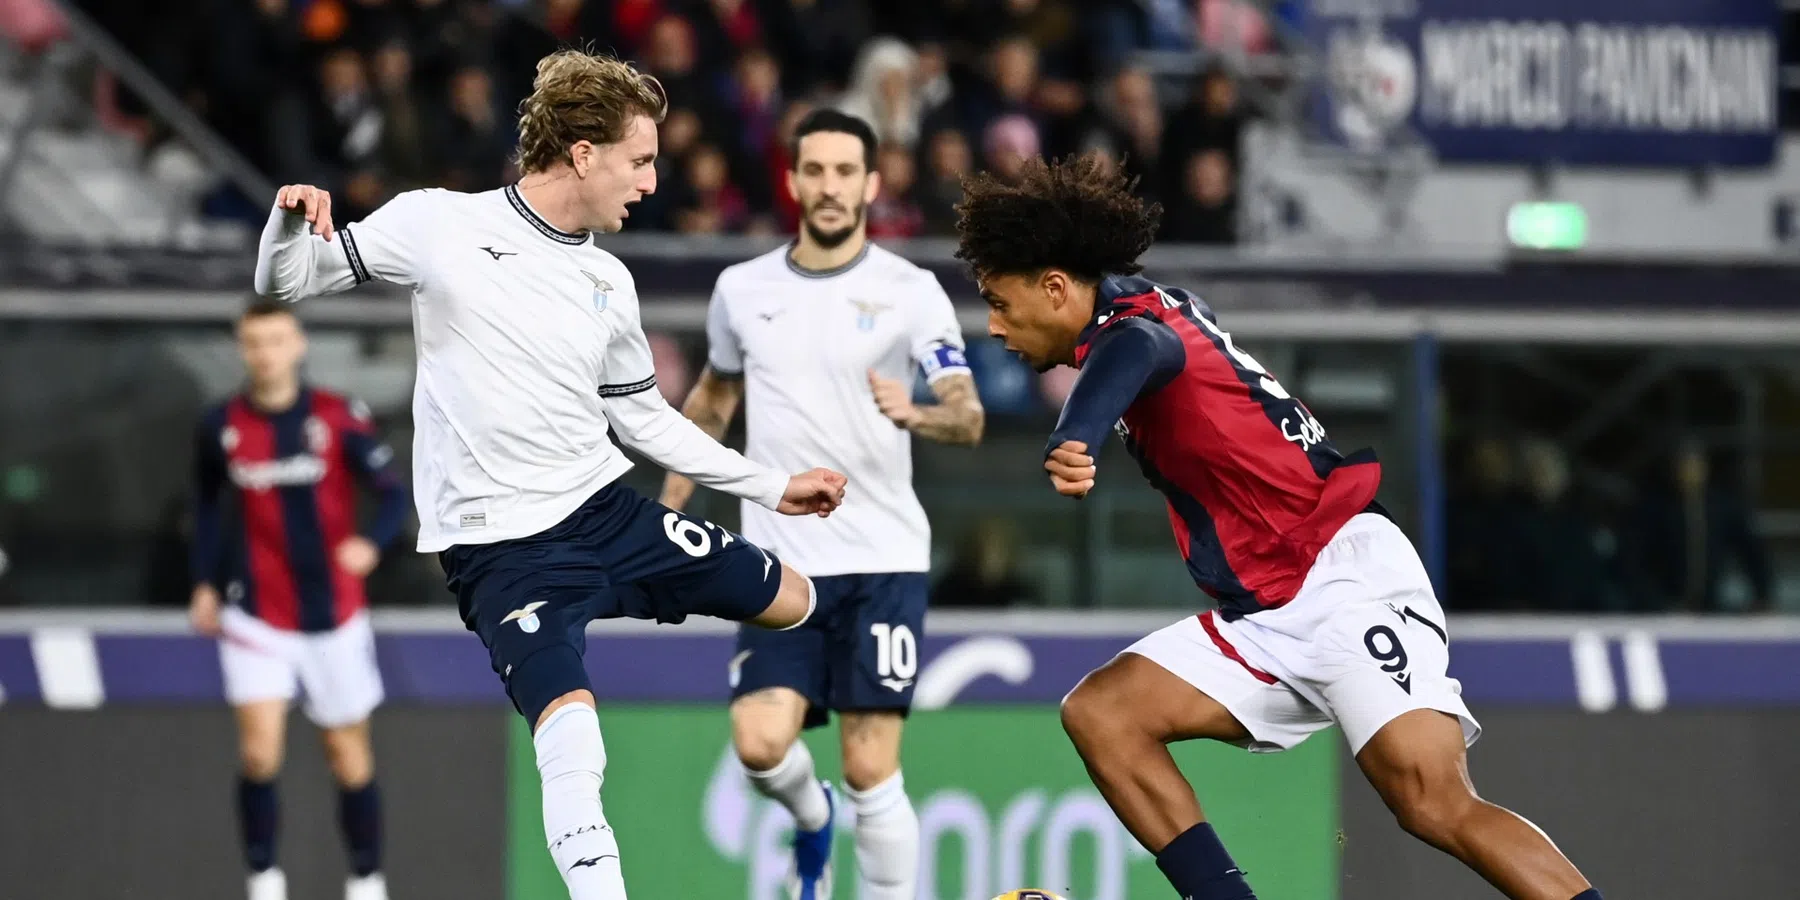 Zirkzee bezorgt Lazio met subtiele assist valse generale voor CL-duel Feyenoord